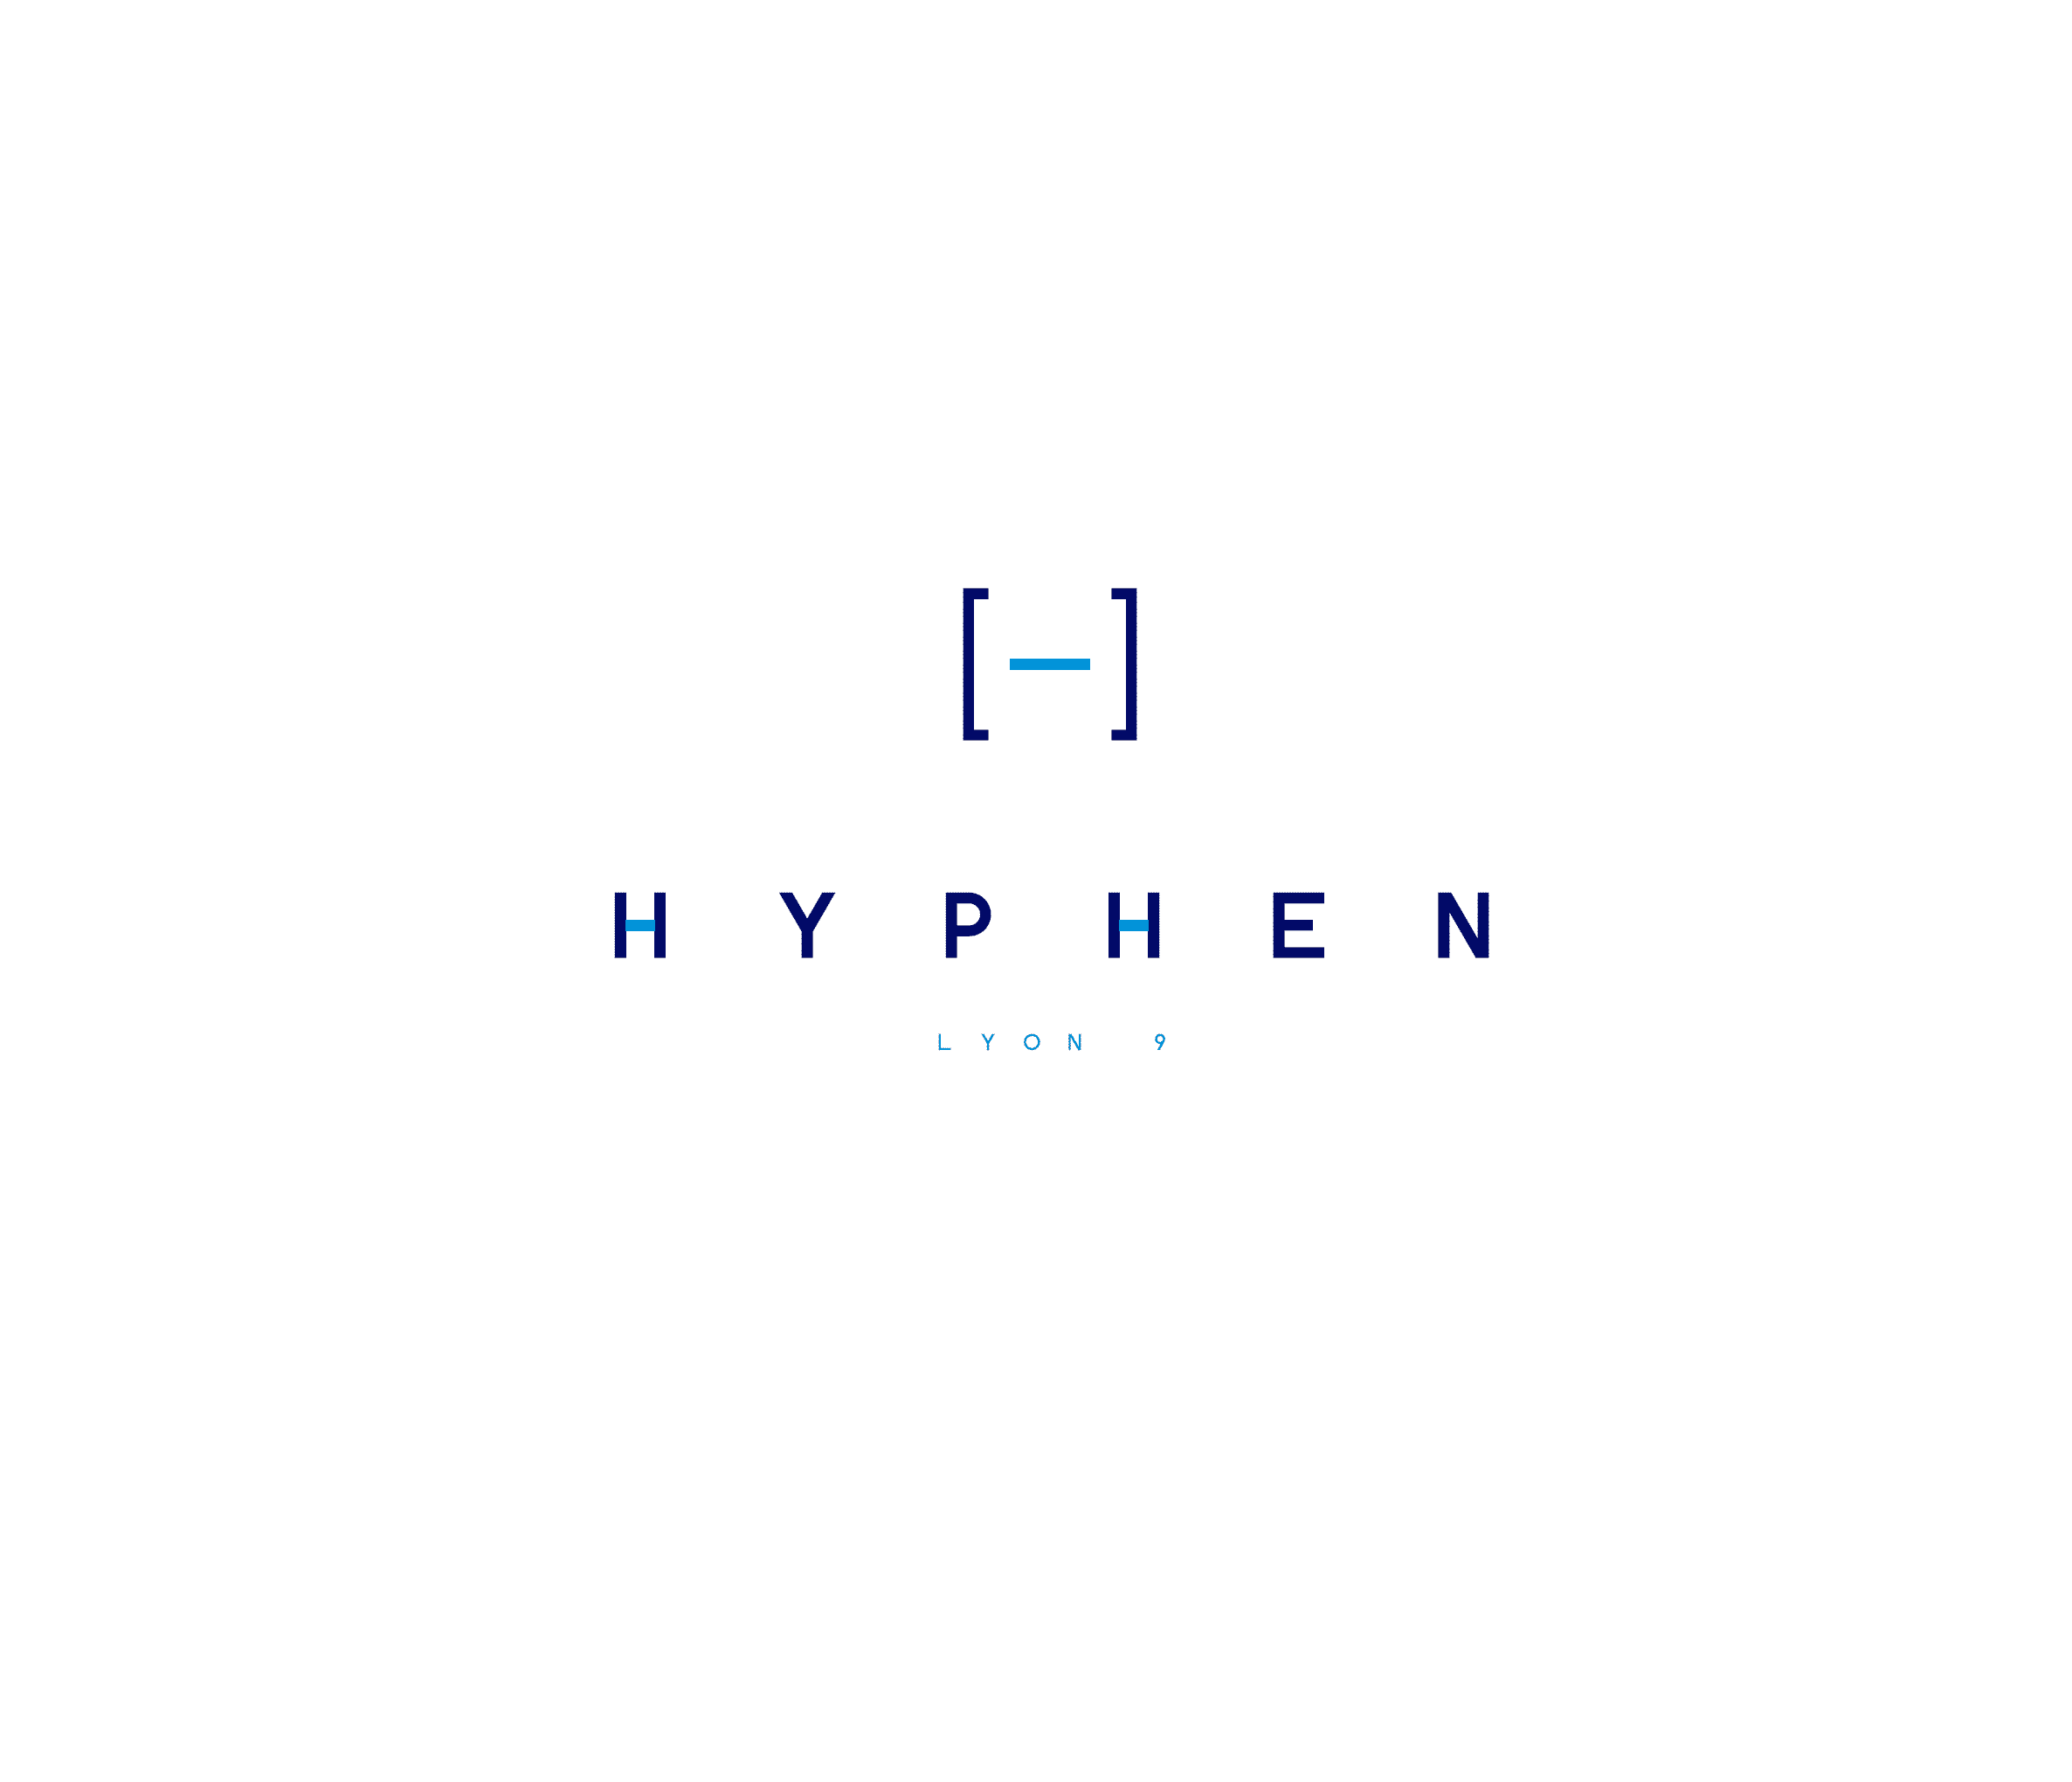 Programme immobilier Lyon 9ème Hyphen